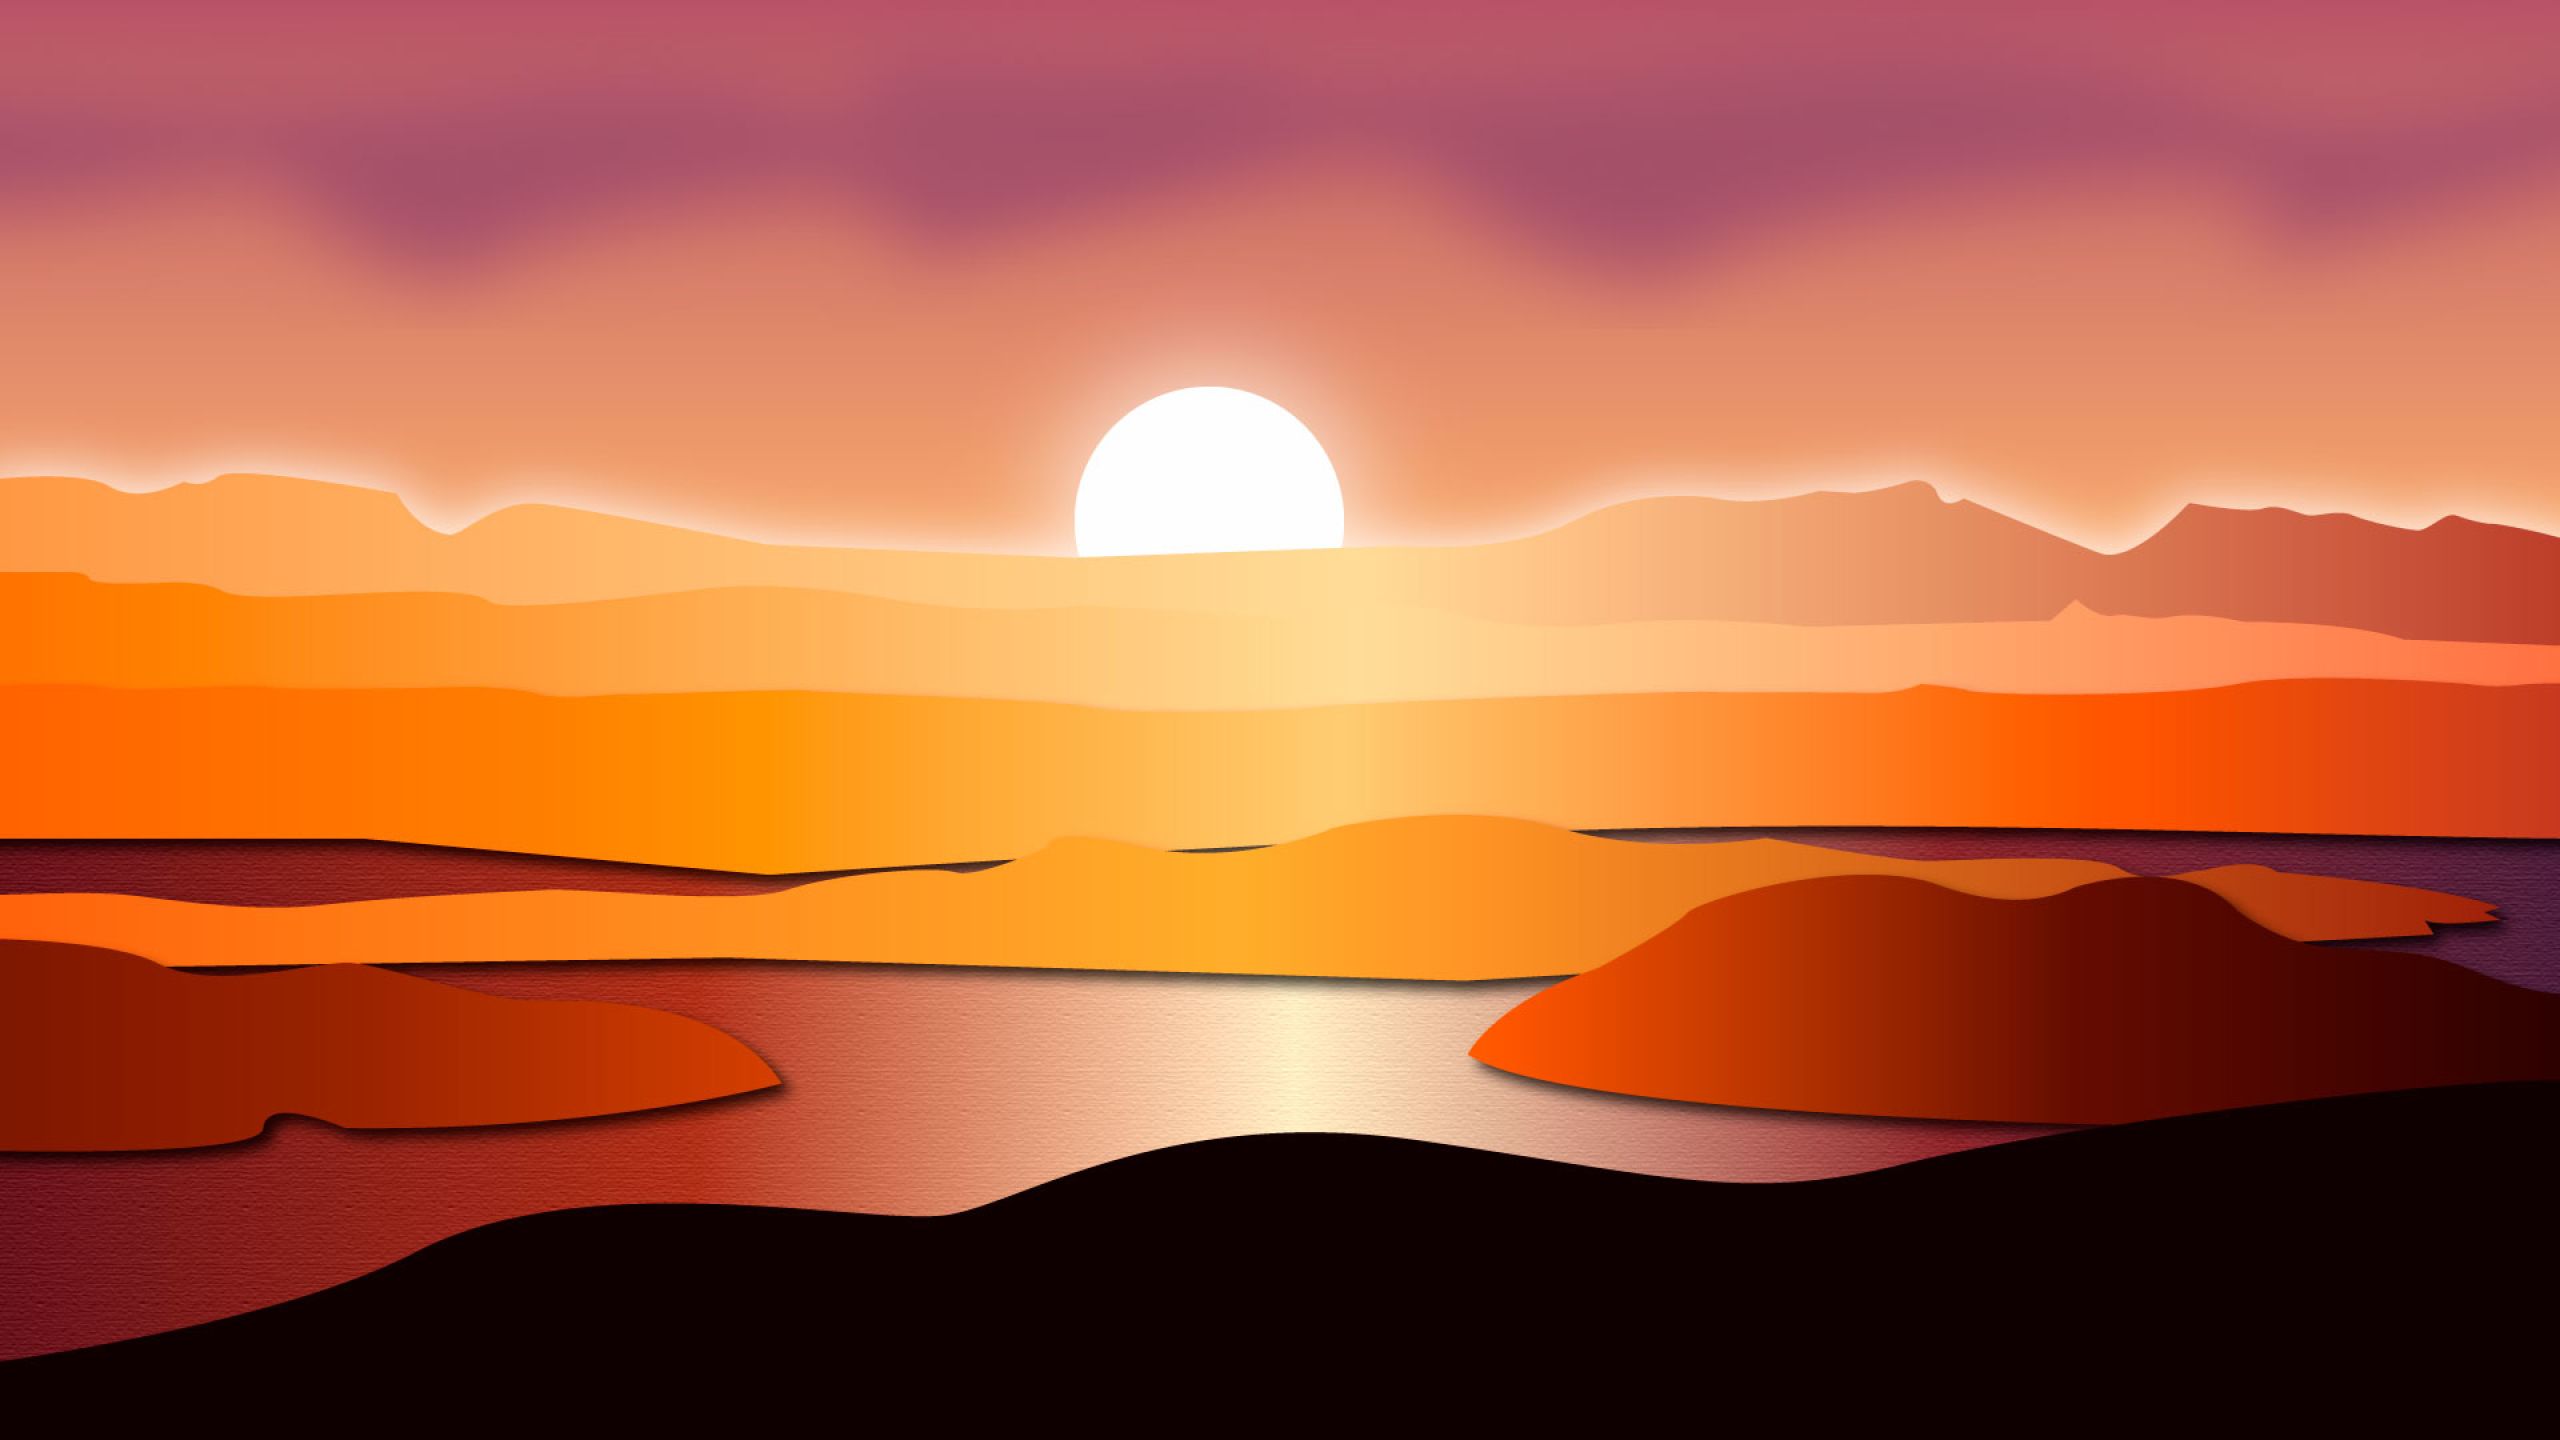 Sunset Digital Art 1440P Resolution Wallpaper, HD